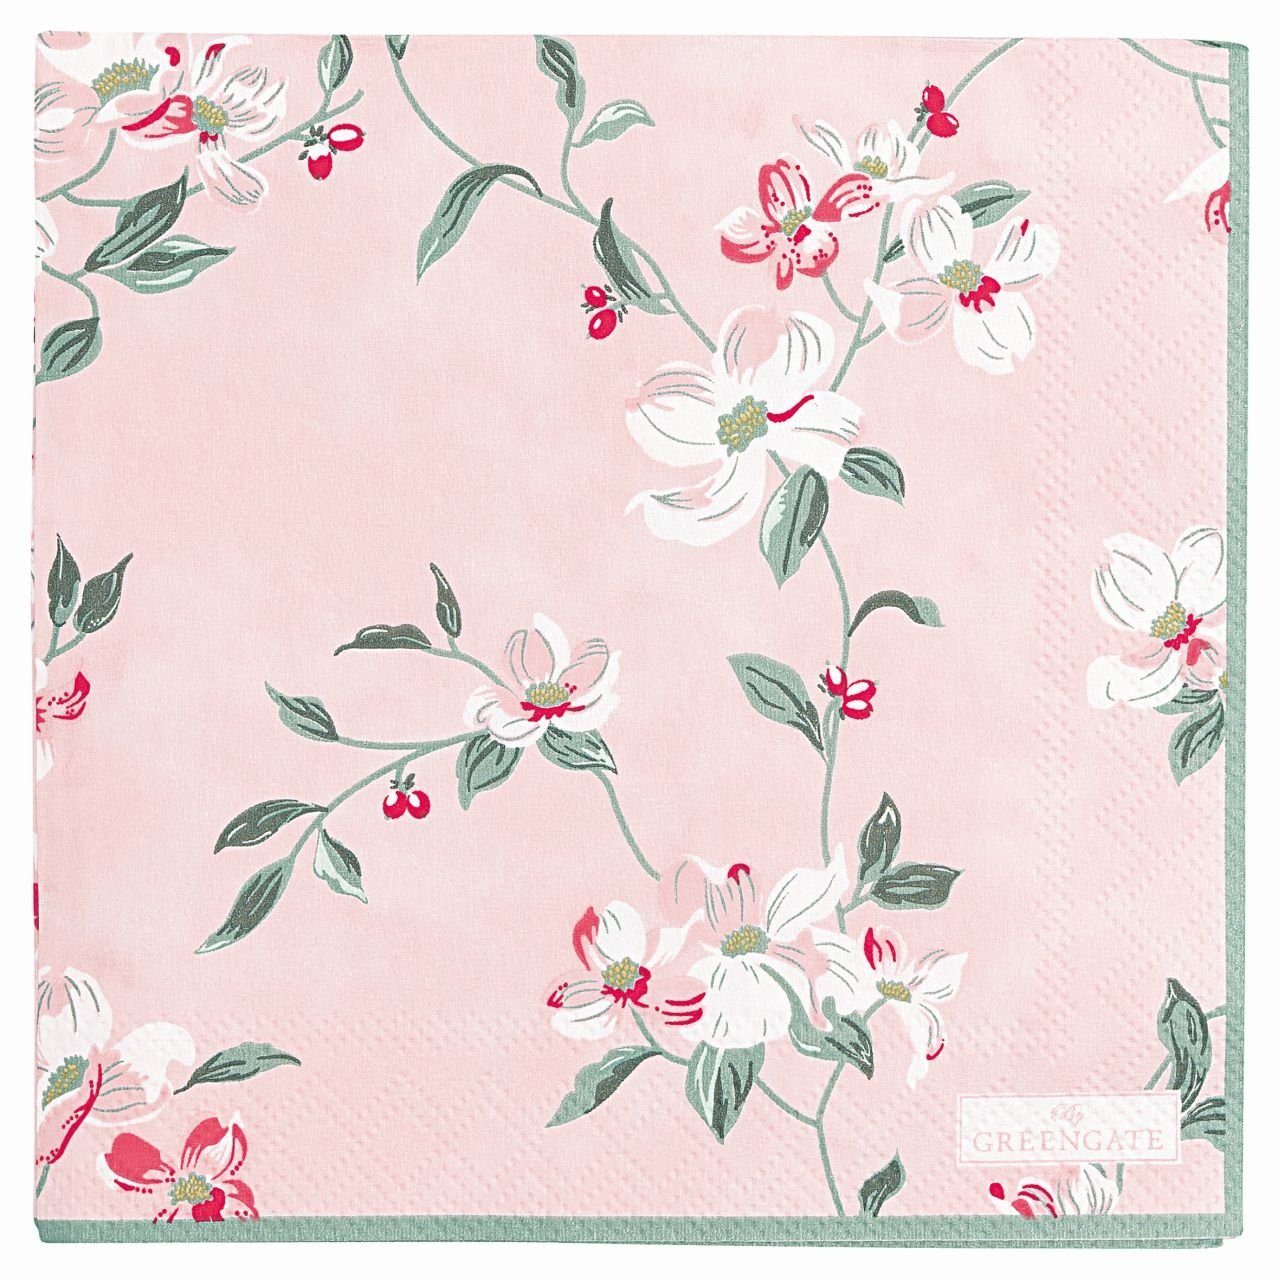 Greengate Papierserviette Jolie klein rosa 25x25 rosafarben Blumen Blumenranken